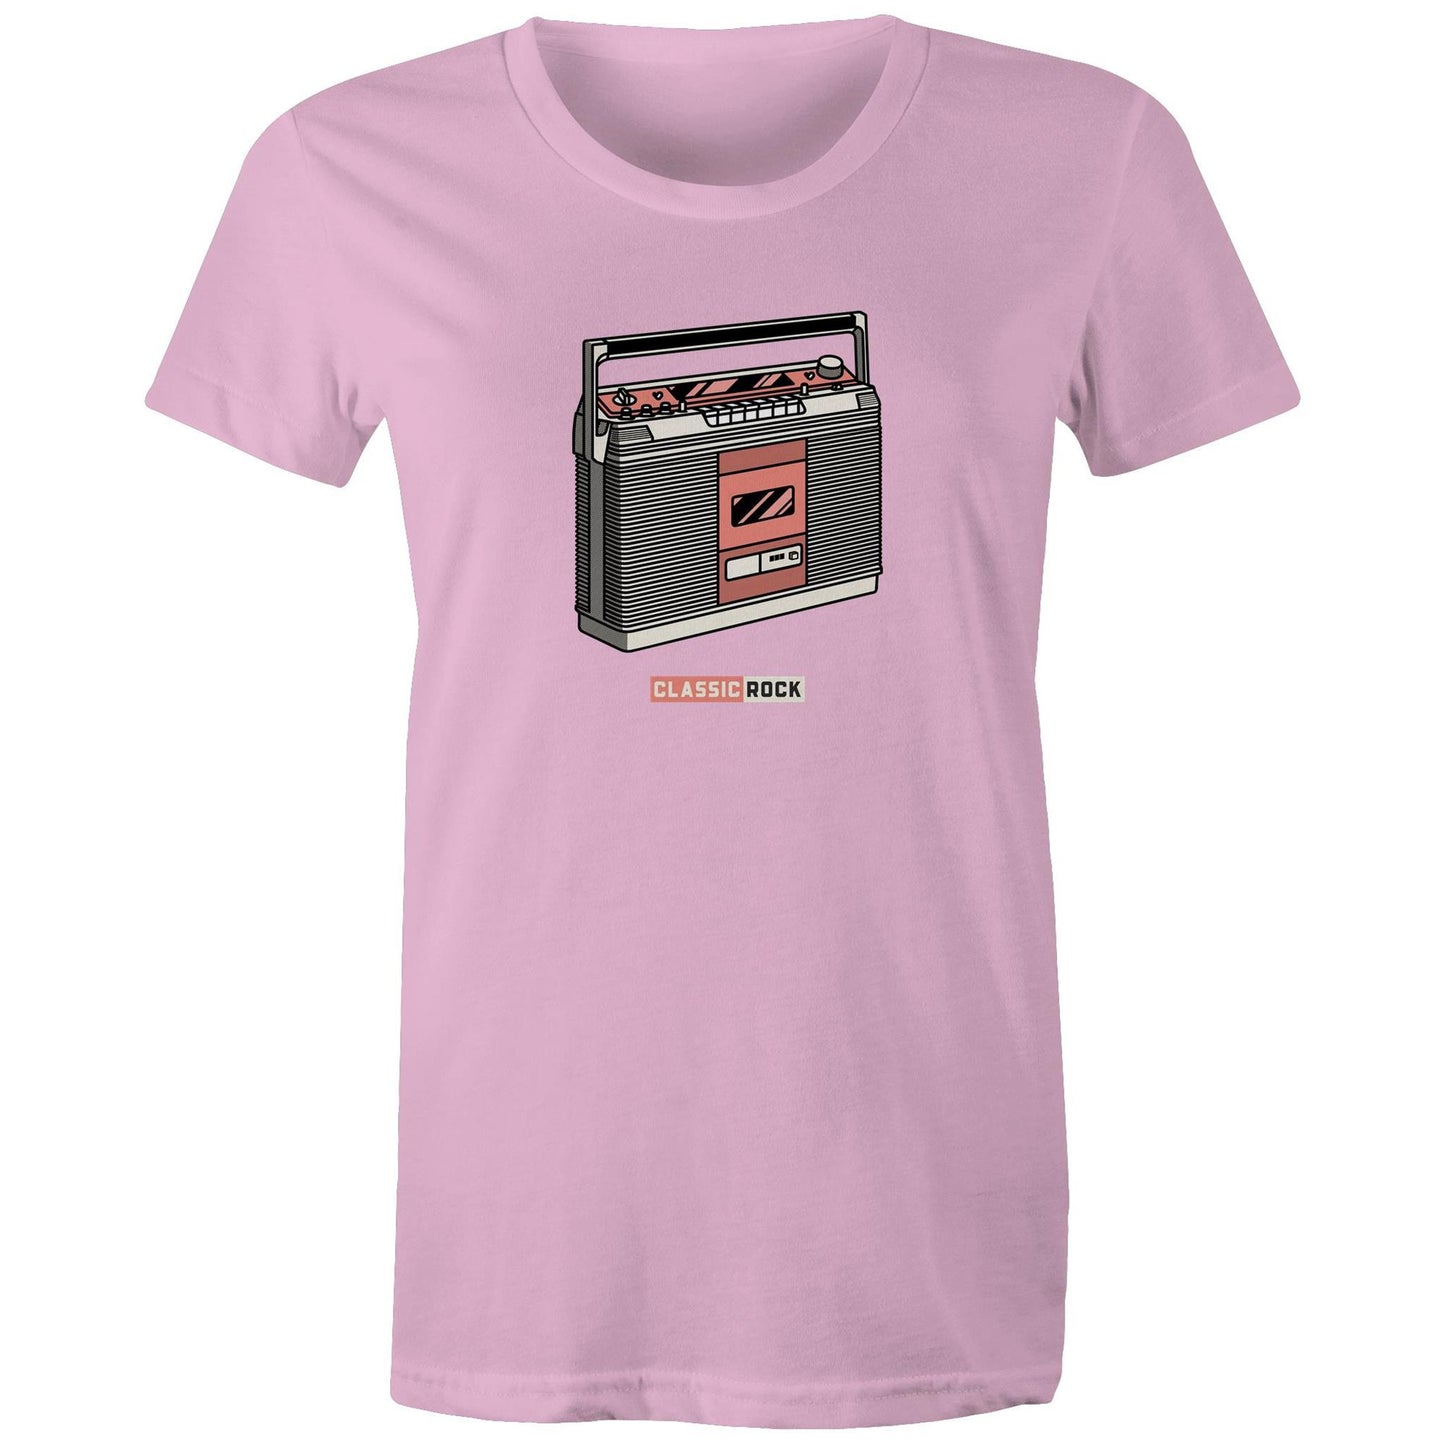 Classic Rock, Cassette Player - Womens T-shirt Pink Womens T-shirt Music Retro